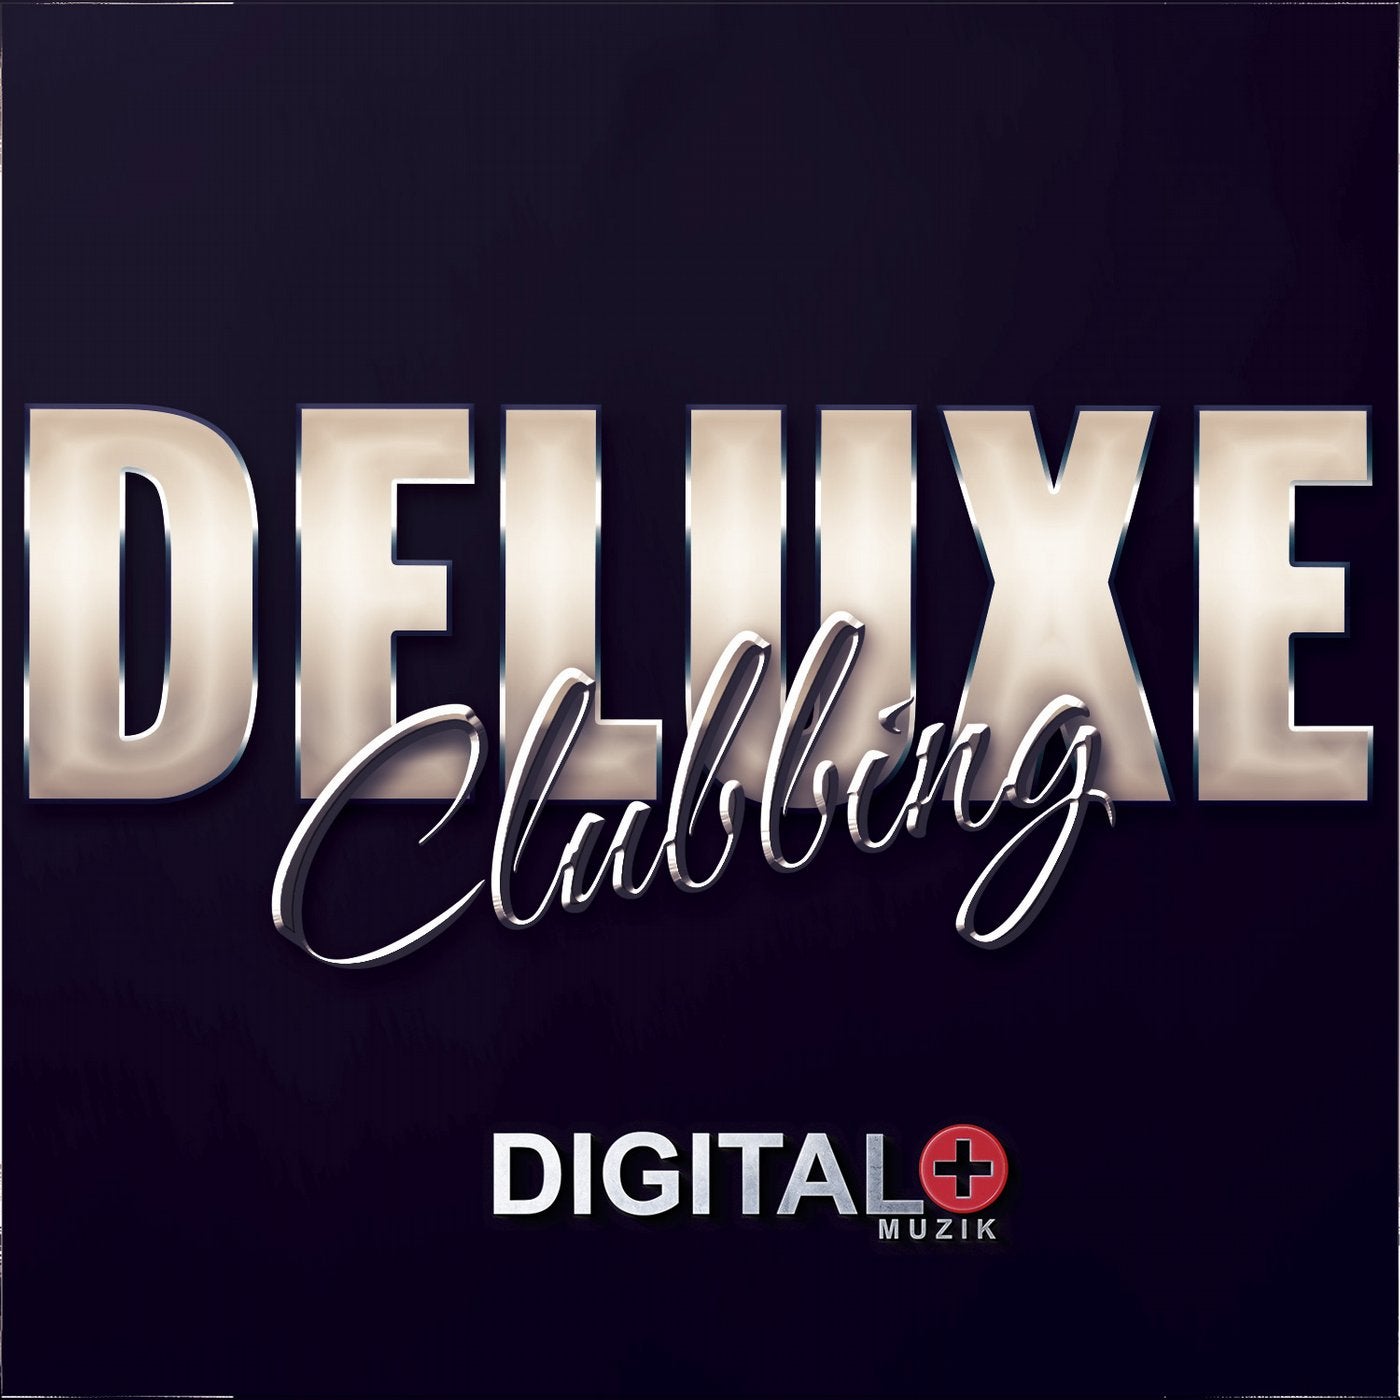 Deluxe Clubbing 07